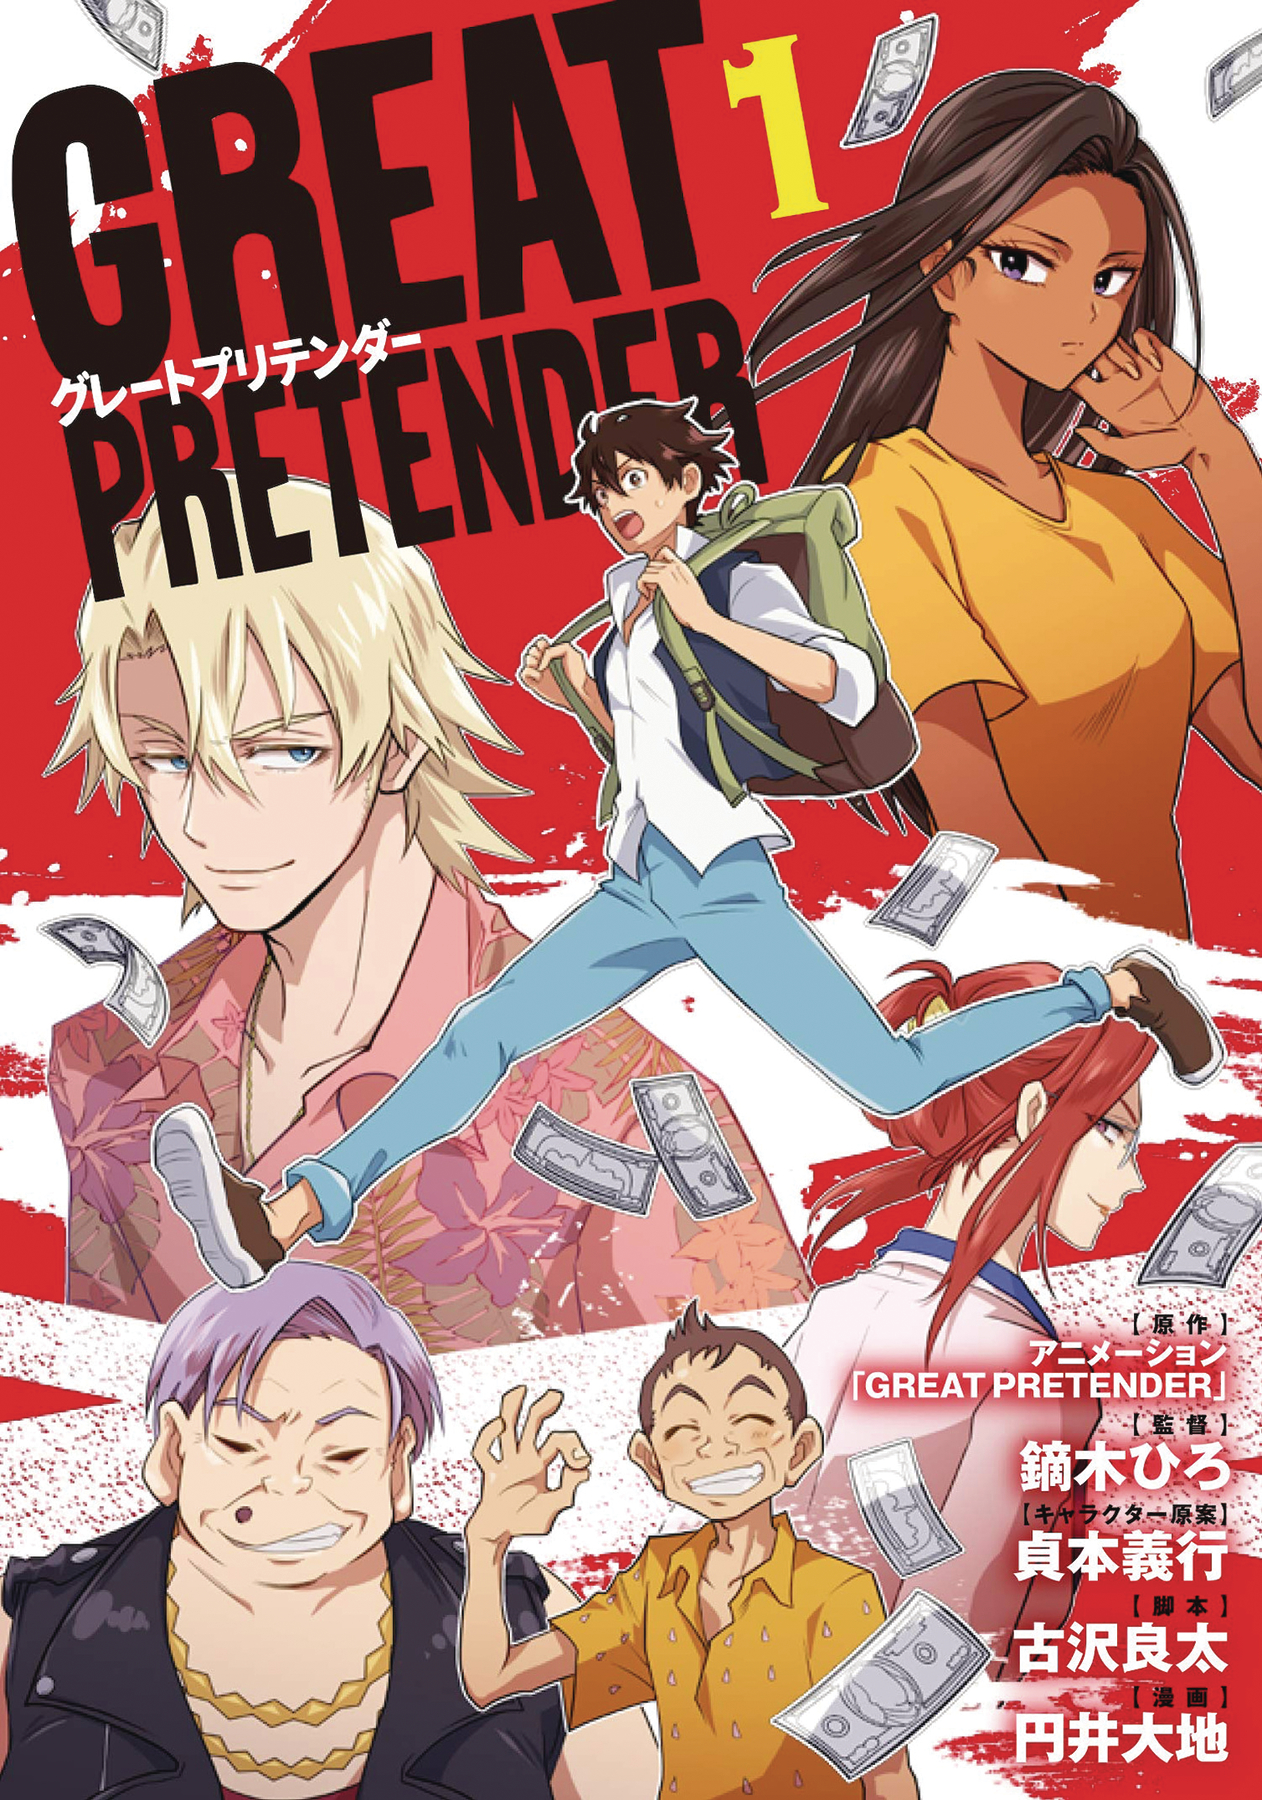 Great Pretender Manga Volume 1 (Mature)